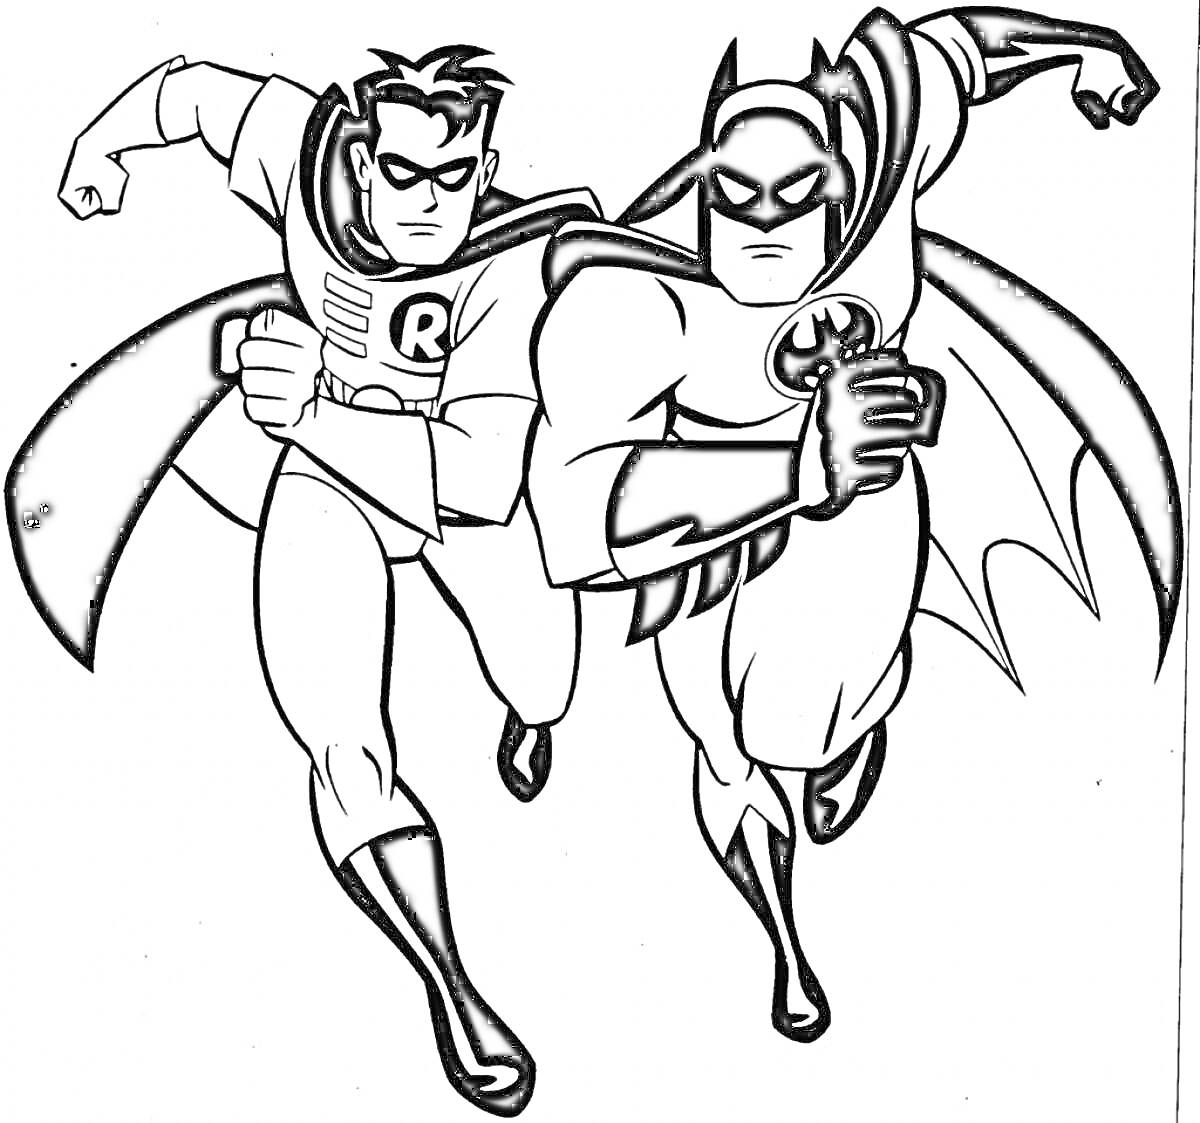 Раскраска Бэтмен и Робин бегут вперед, на черно-белой раскраске, оба в костюмах героев